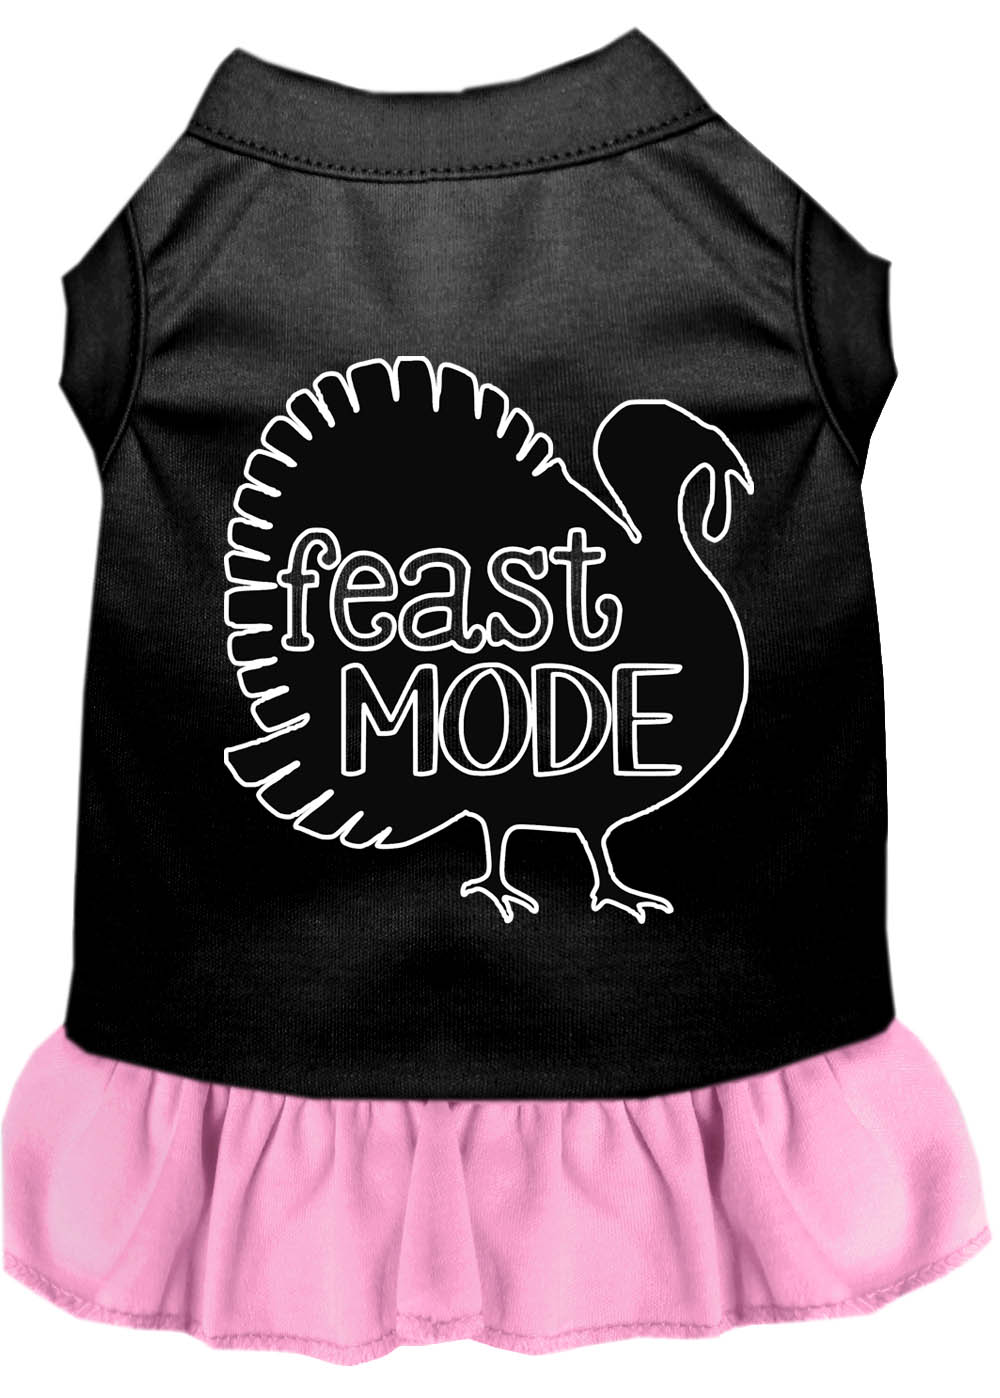 Feast Mode Screen Print Dog Dress Black with Light Pink XL